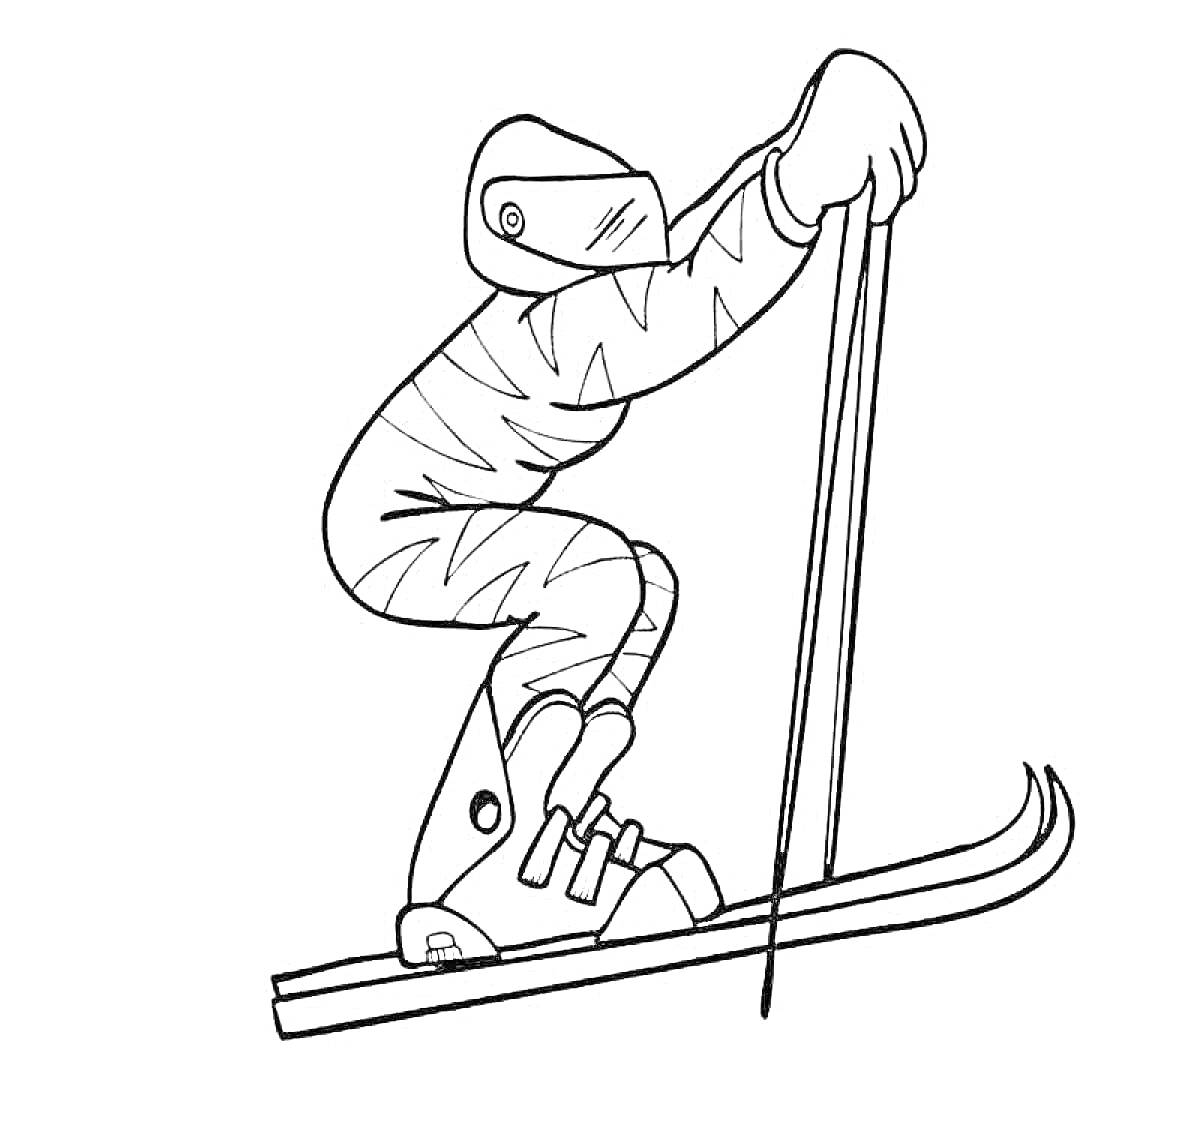 Лыжник в защитном костюме с палками на лыжах